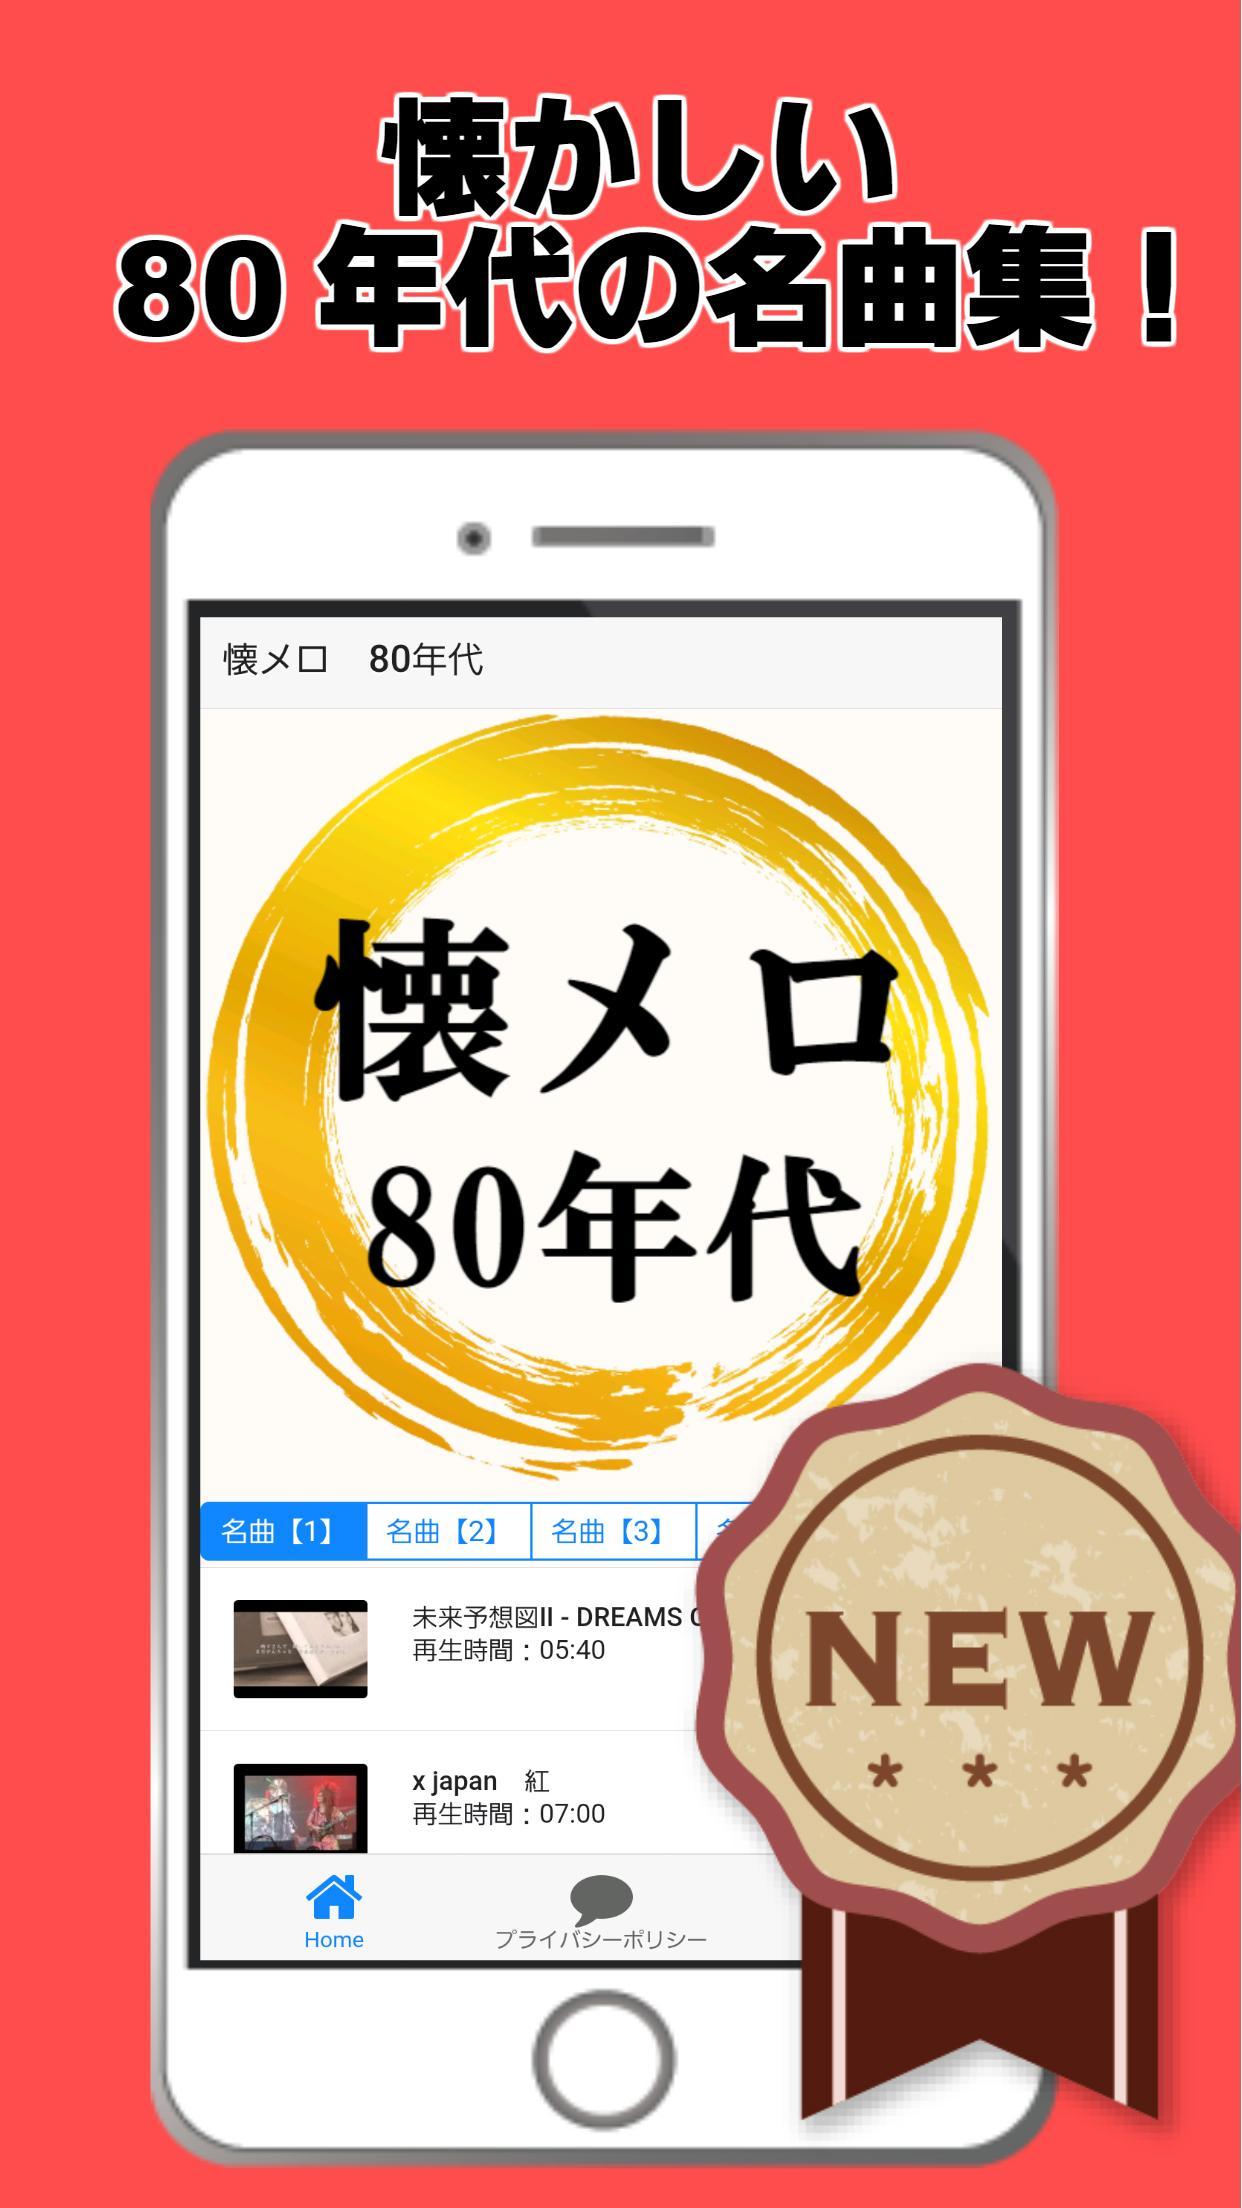 昭和の歌謡曲 80年代 懐メロ フォークソング 邦楽 演歌 Jpop For Android Apk Download